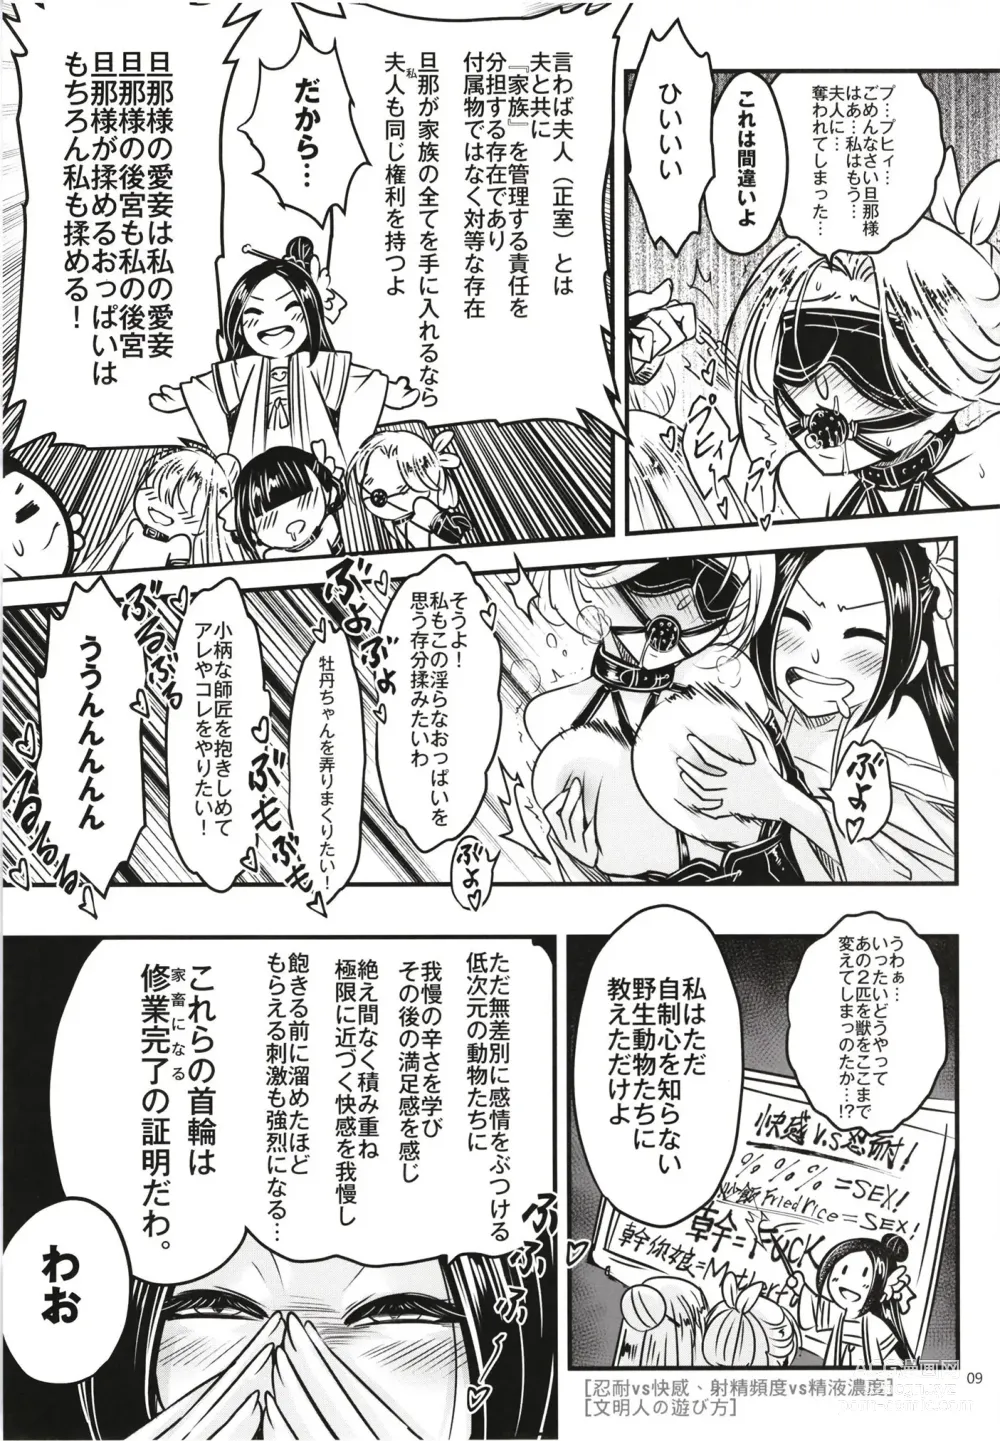 Page 11 of doujinshi Hyakkasou 12 <<Jitsuroku Makyou Hyakkasou Kikou>>